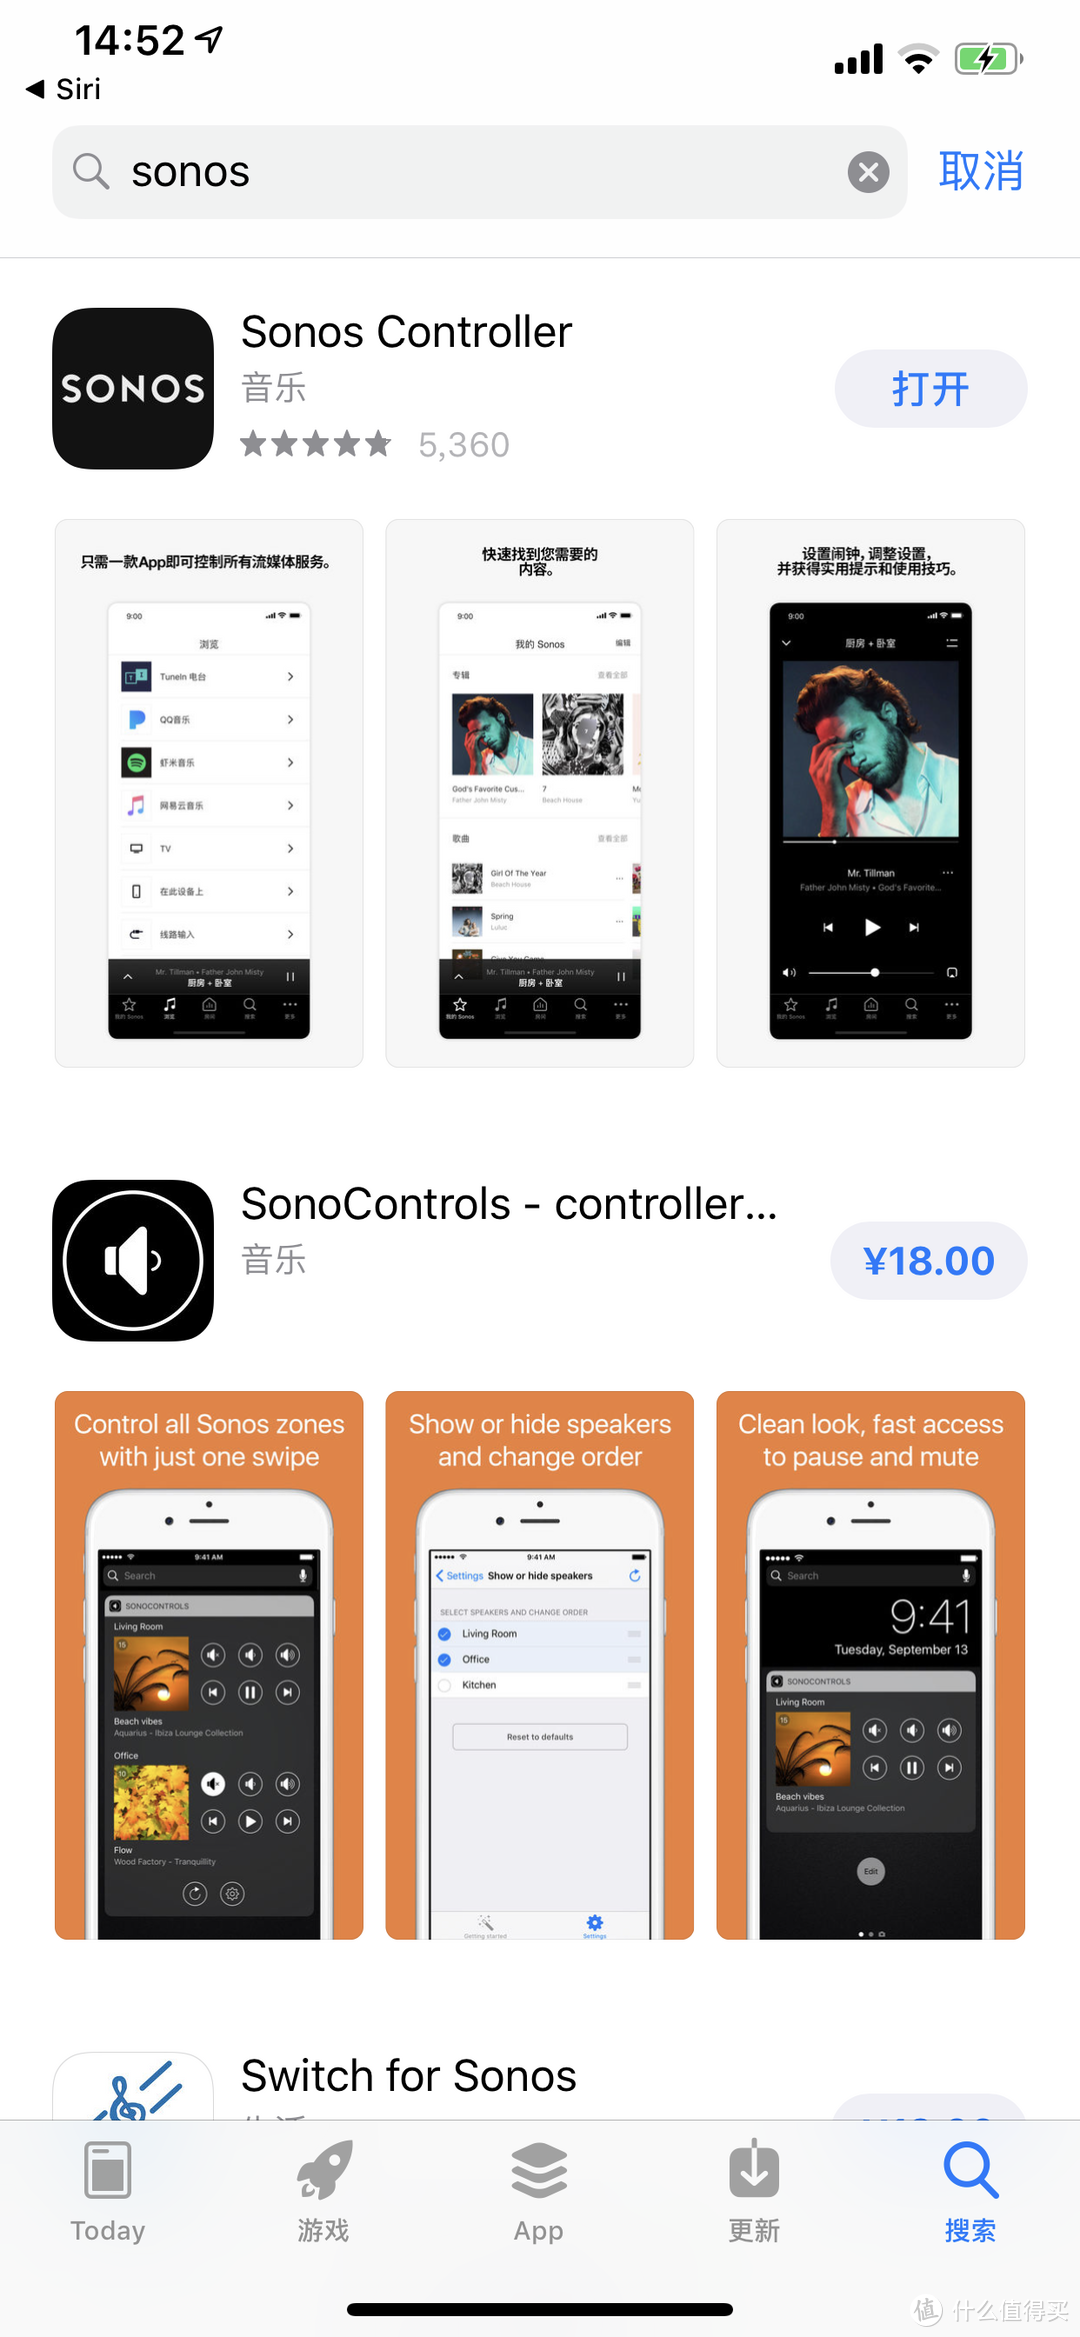 手机搜索Sonos Controller安装后注册账号就可以，来添加sonos产品。安卓/IOS/PC/MAC平台都有的。